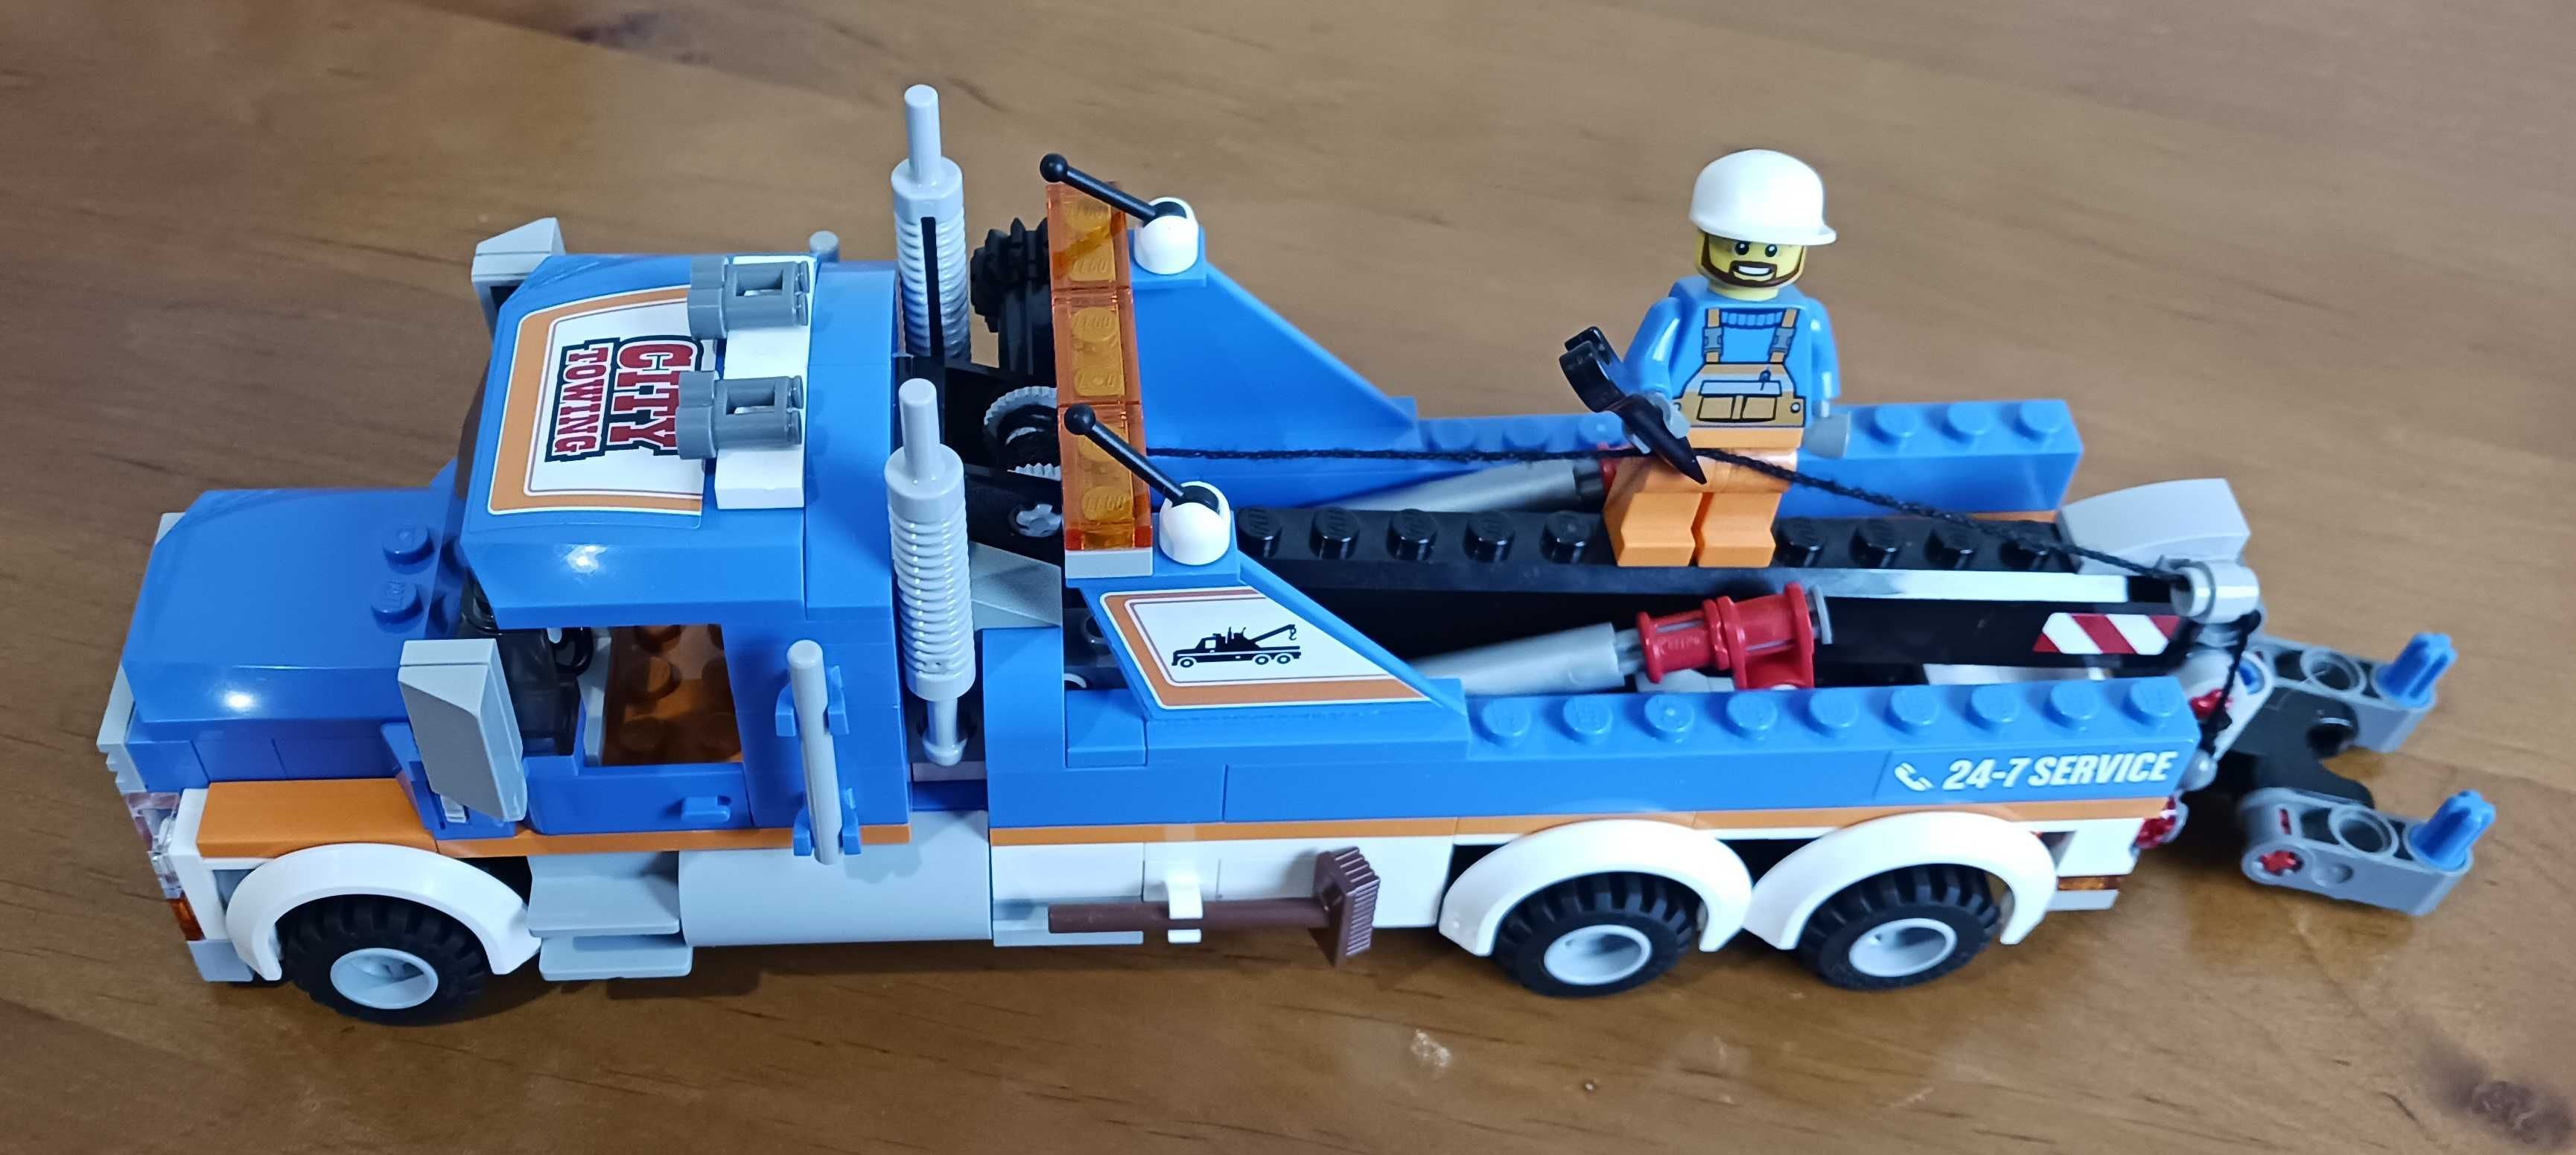 Lego City 60056 Ciężarówka Holownik + pudełko + instrukcja